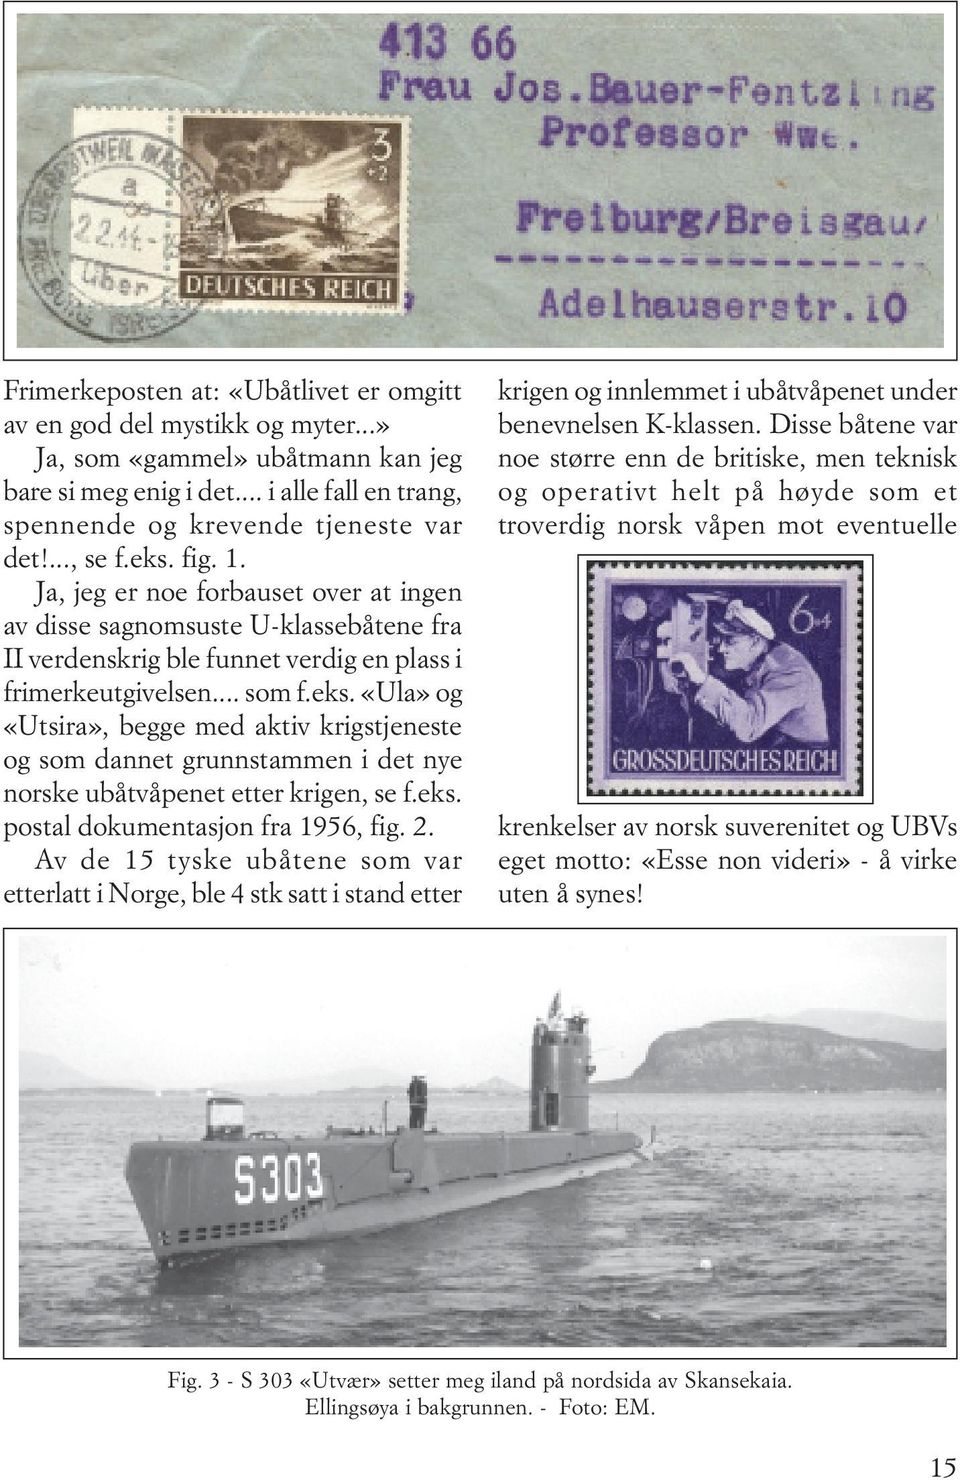 eks. postal dokumentasjon fra 1956, fig. 2. Av de 15 tyske ubåtene som var etterlatt i Norge, ble 4 stk satt i stand etter krigen og innlemmet i ubåtvåpenet under benevnelsen K-klassen.